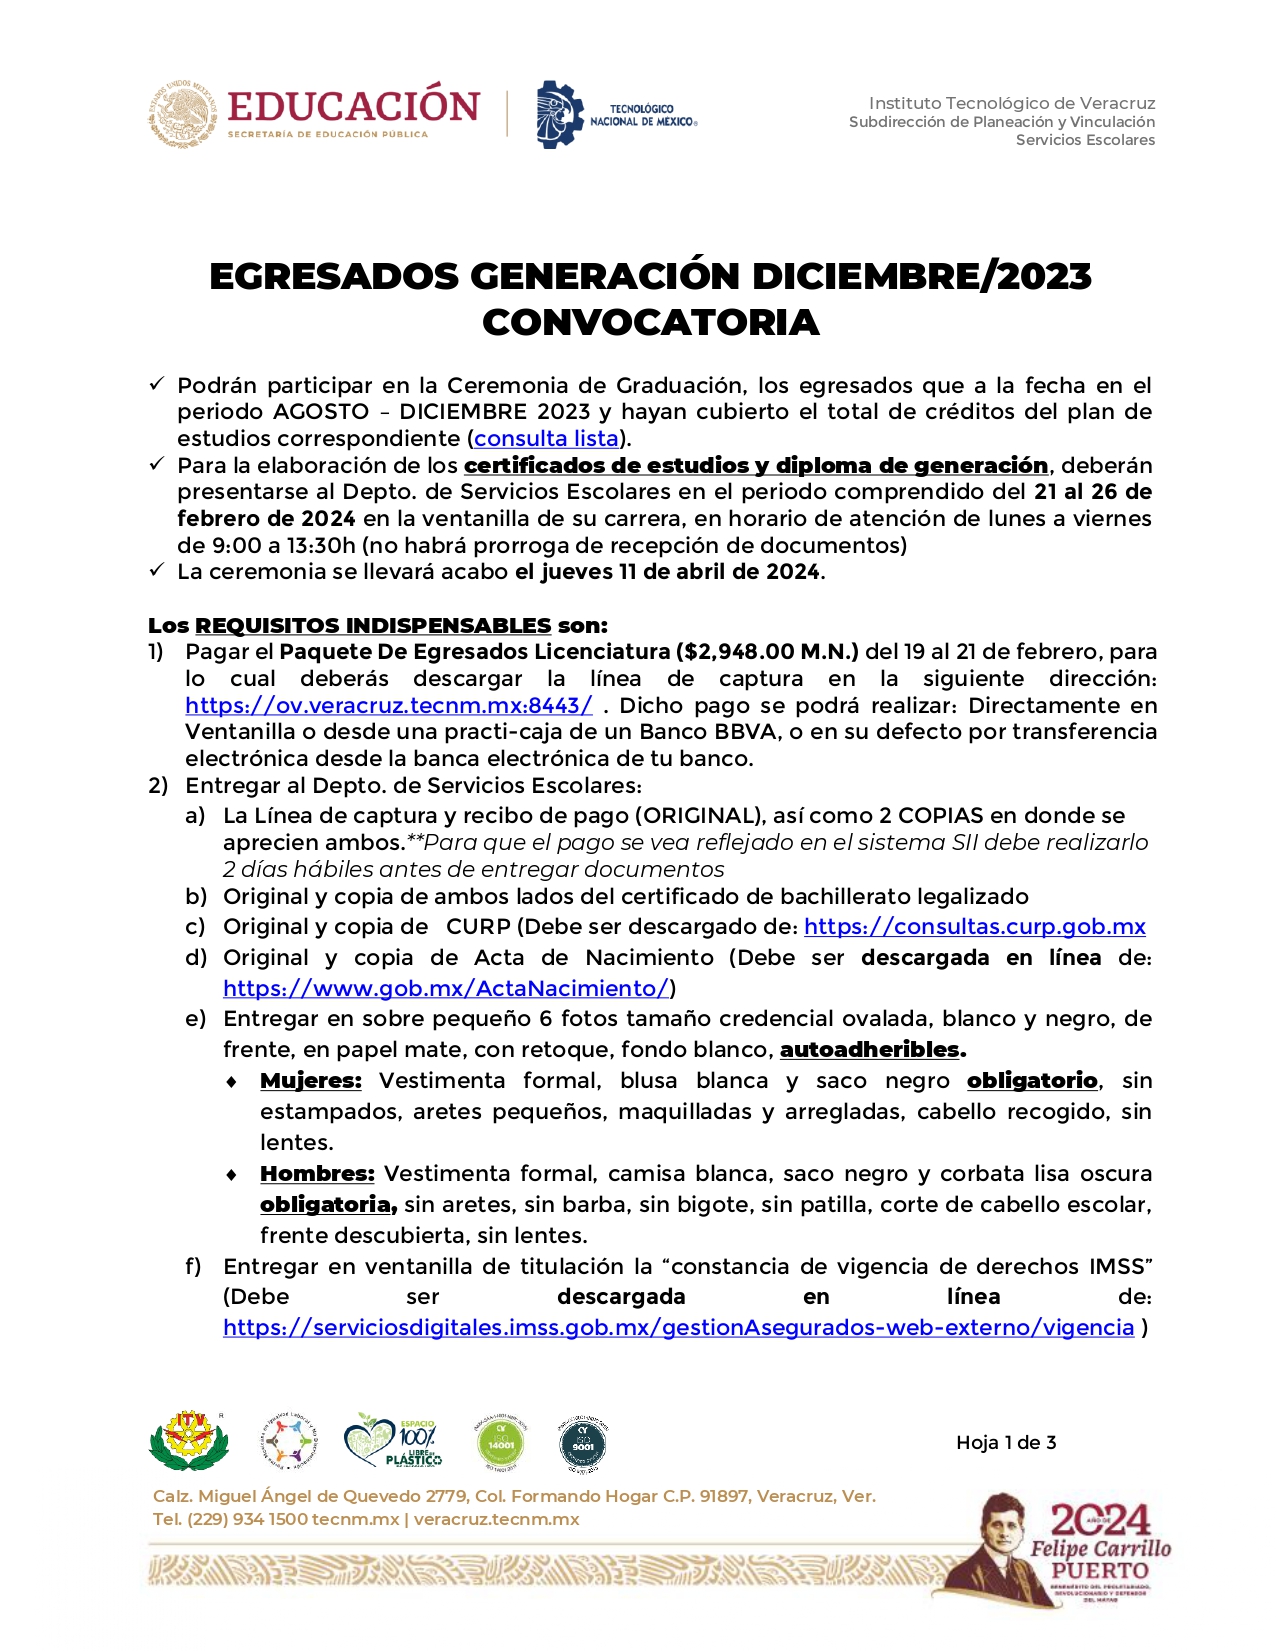 Convocatoria_EgresadosGeneracionAD23_page-0001.jpg